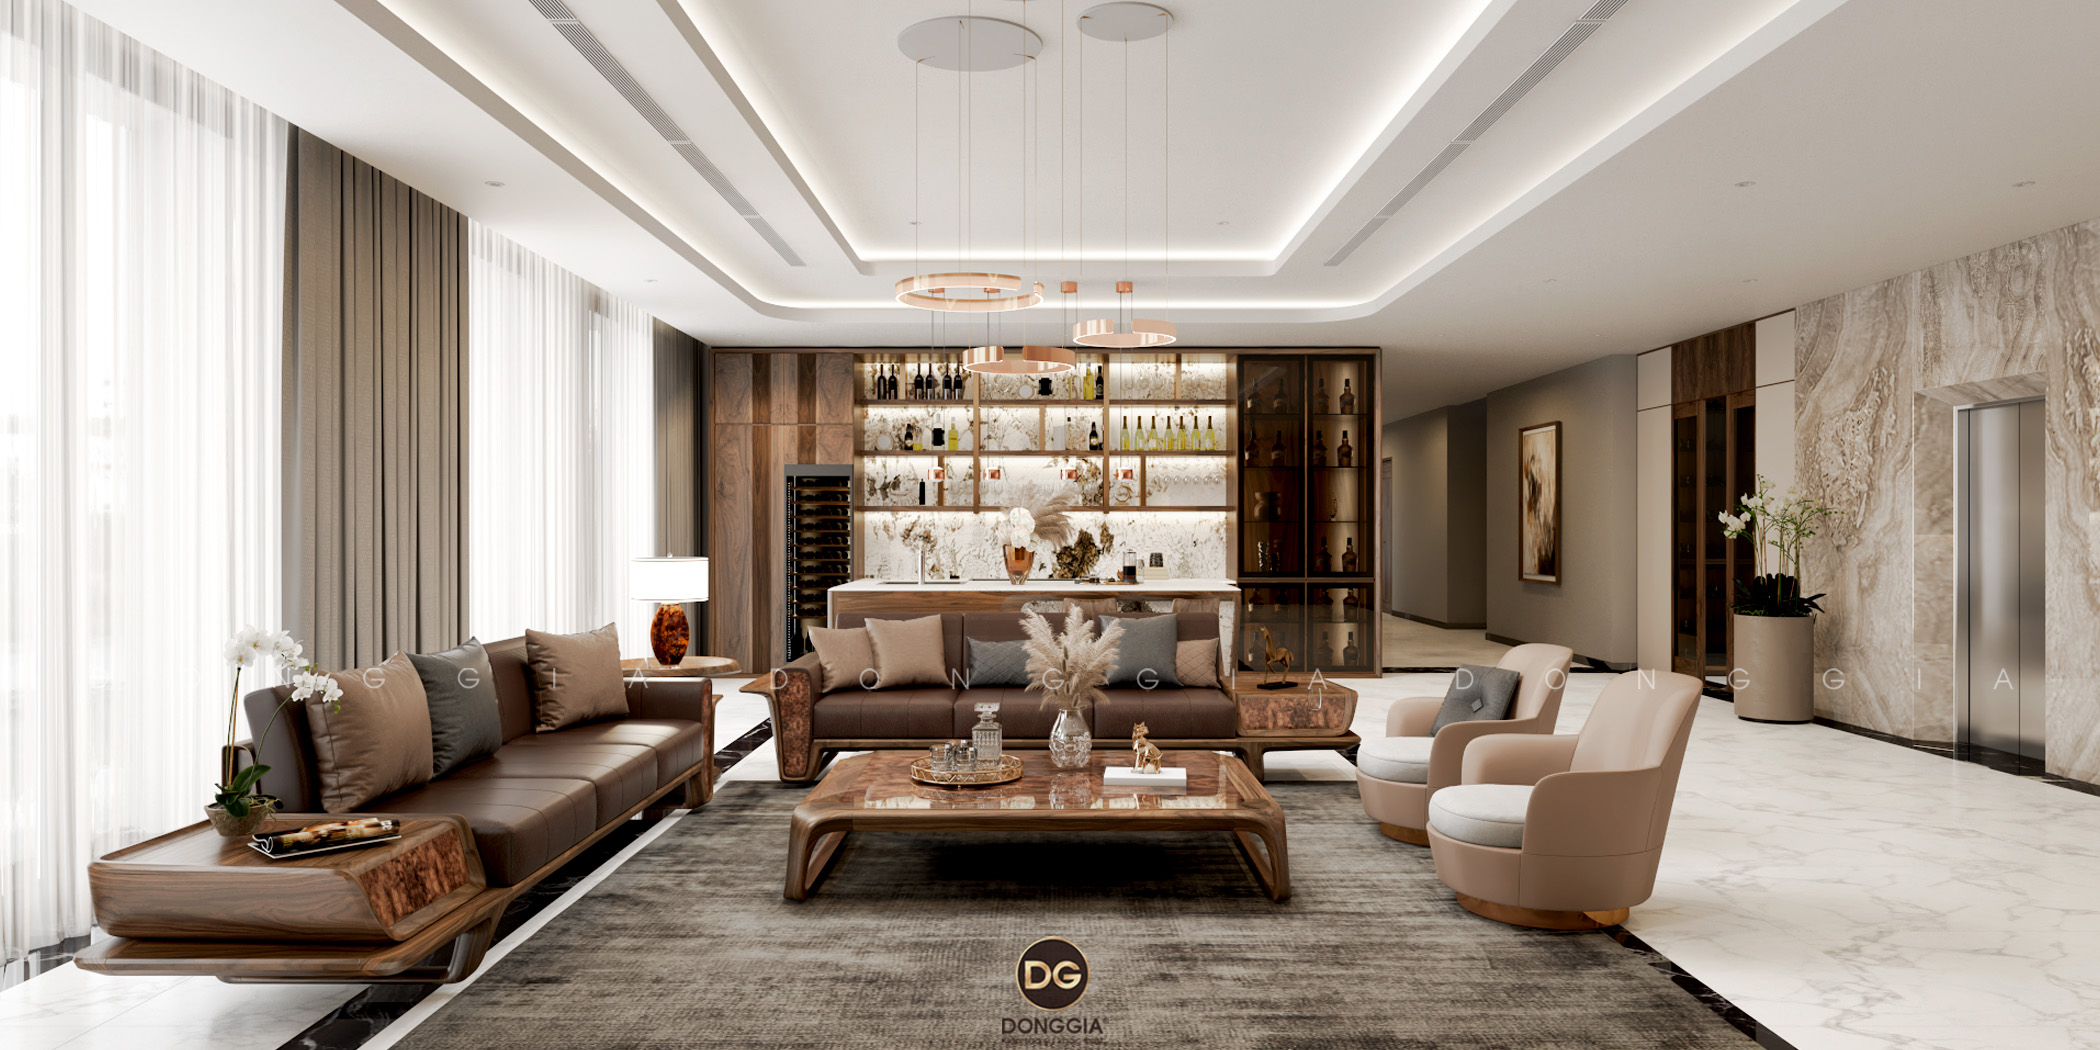 Năm 2024 đang chứng kiến sự ra đời của một mẫu sofa gỗ đẹp vô cùng ấn tượng. Với thiết kế tinh tế, chất liệu gỗ cao cấp và kiểu dáng đầy nghệ thuật, chiếc sofa này sẽ làm say đắm bất kỳ ai yêu thích nội thất sang trọng và tinh tế.